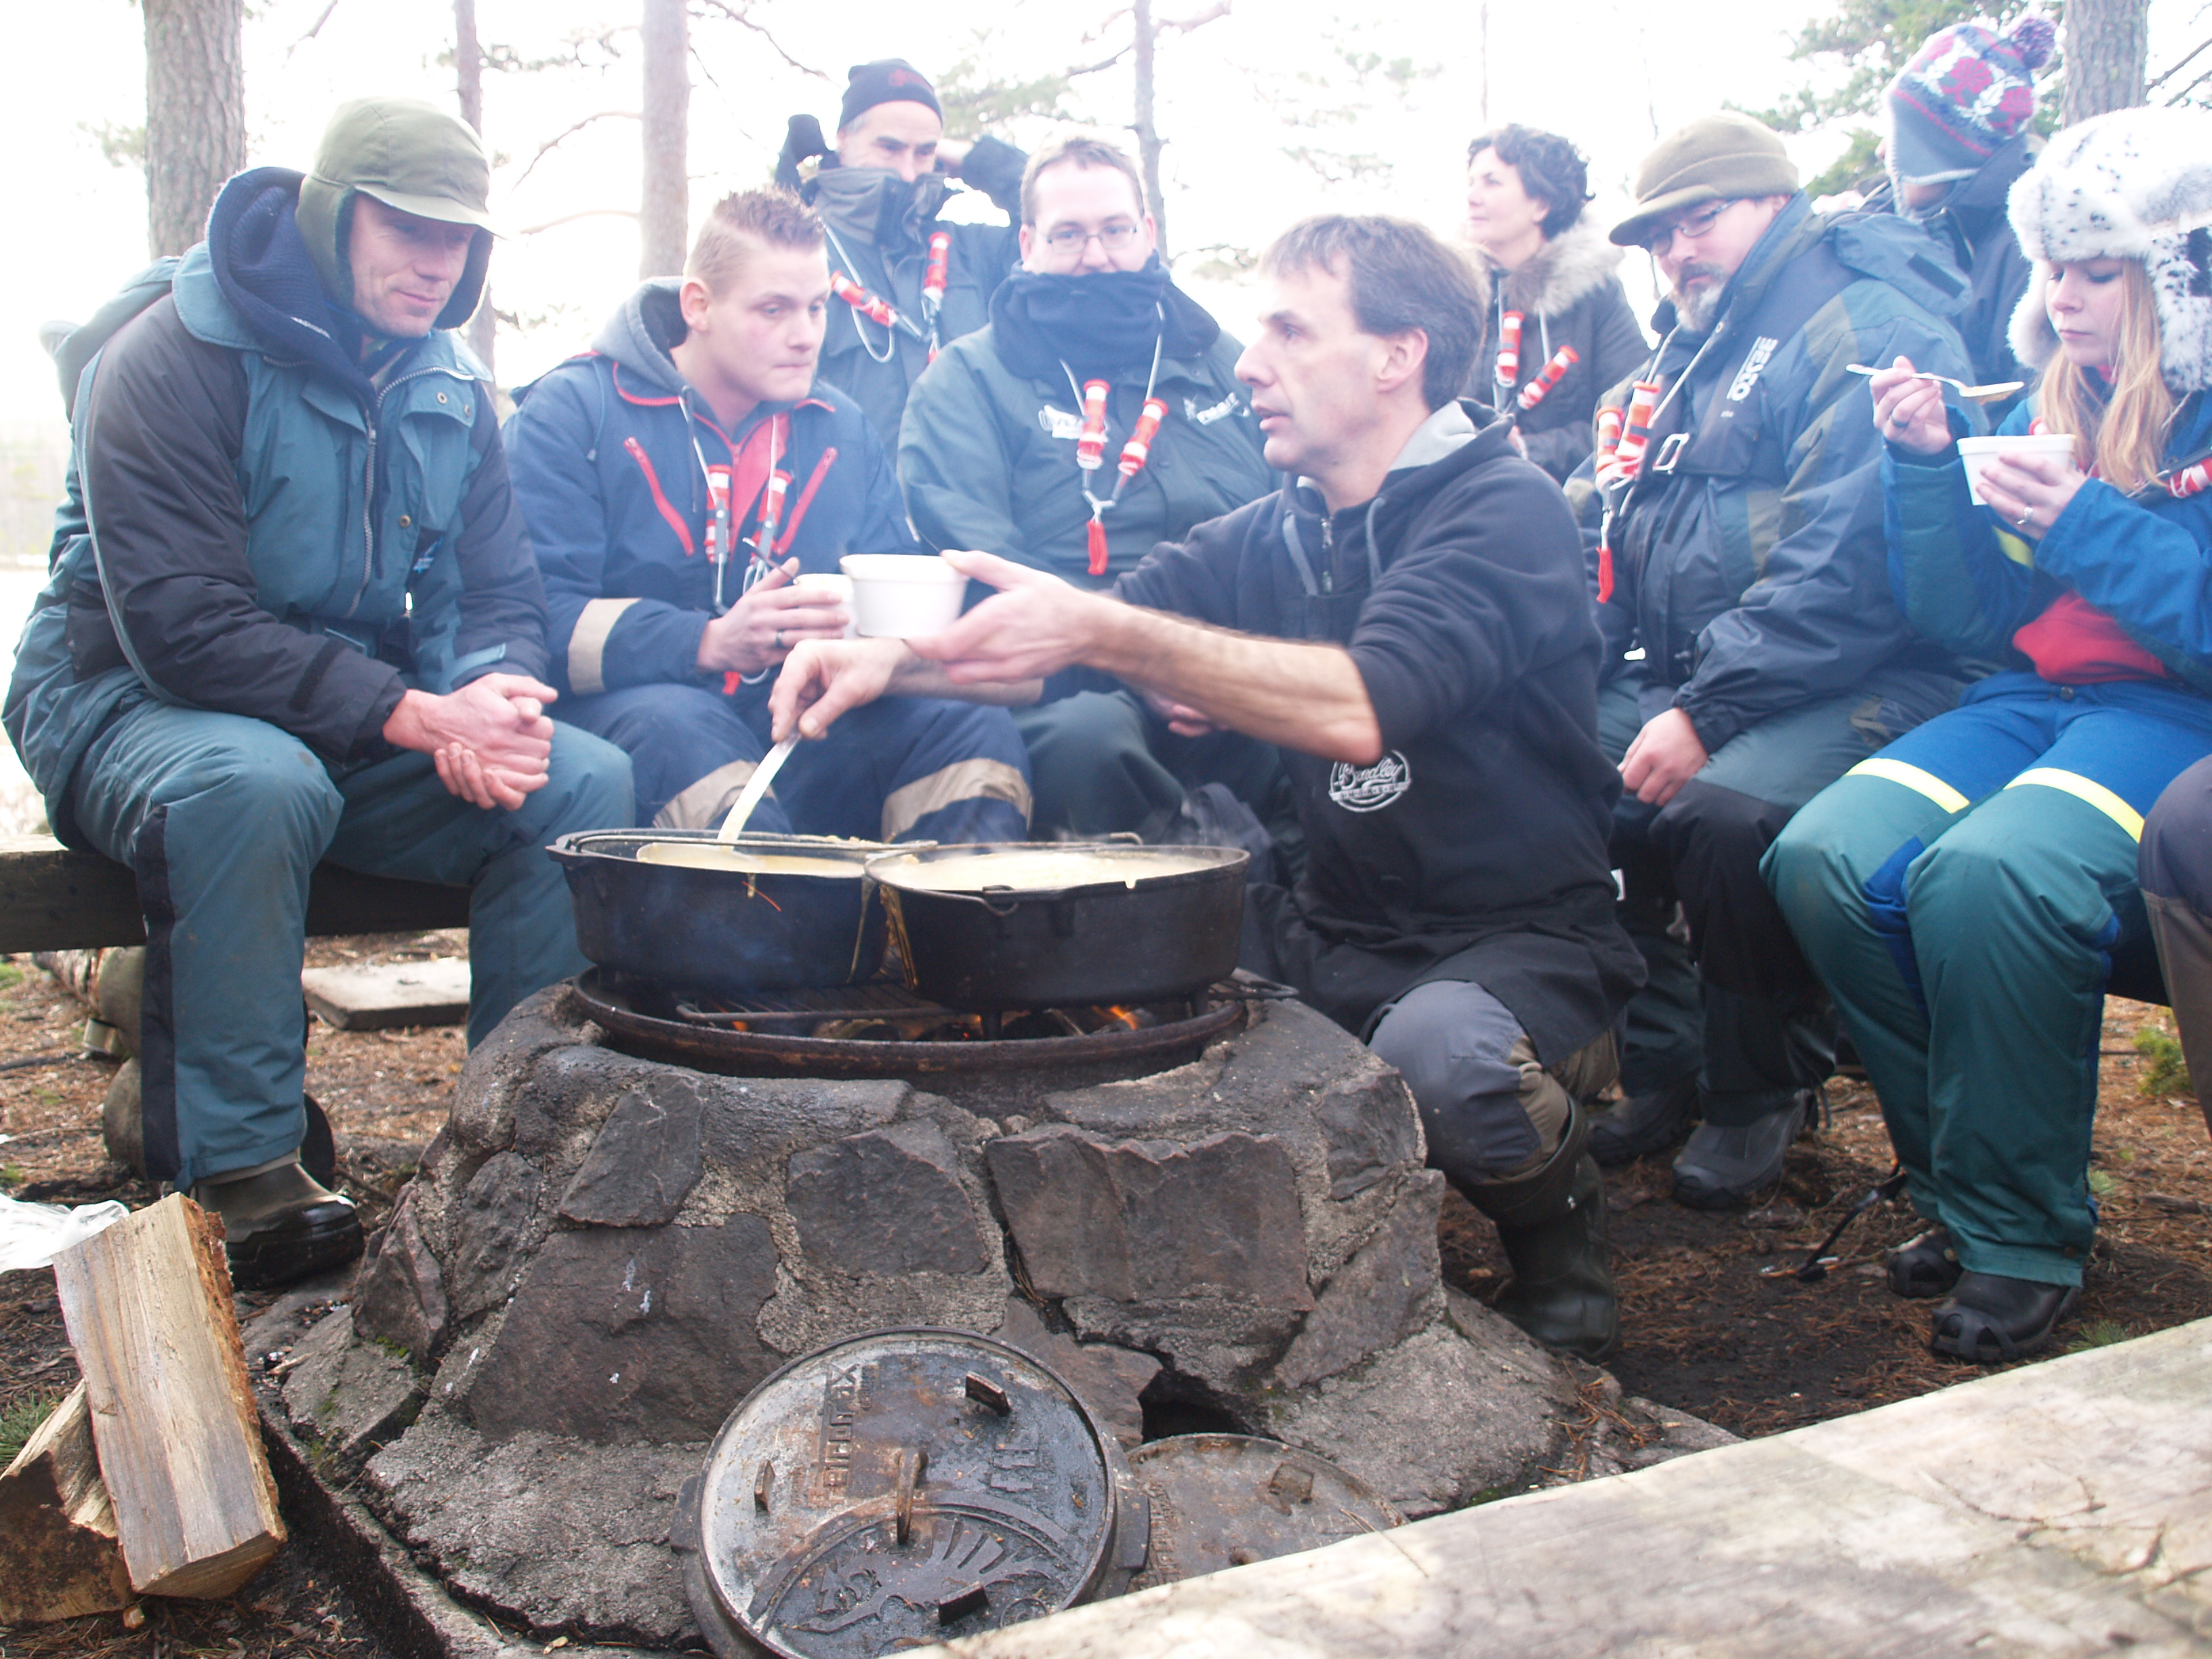 Johan Postma serviert am Lagerfeuer leckeres Essen, damit den Eisanglern wieder warm wird.